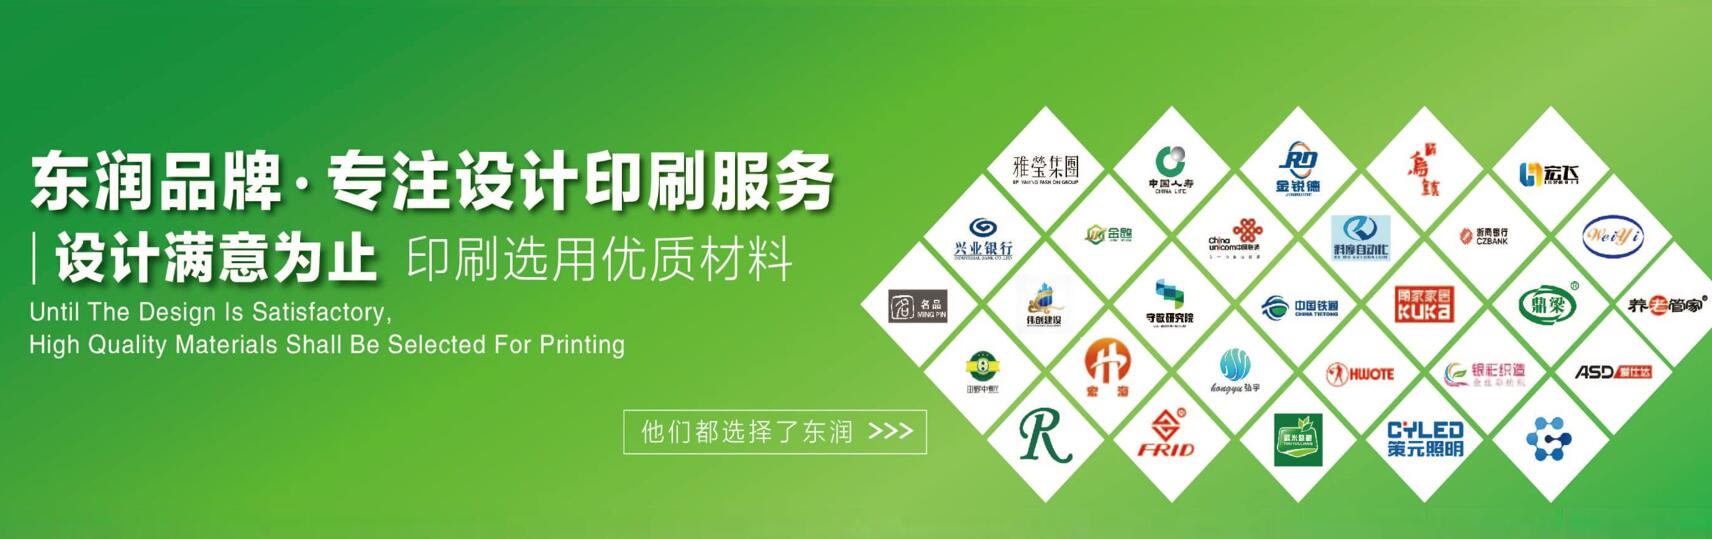 杭州宣传册设计